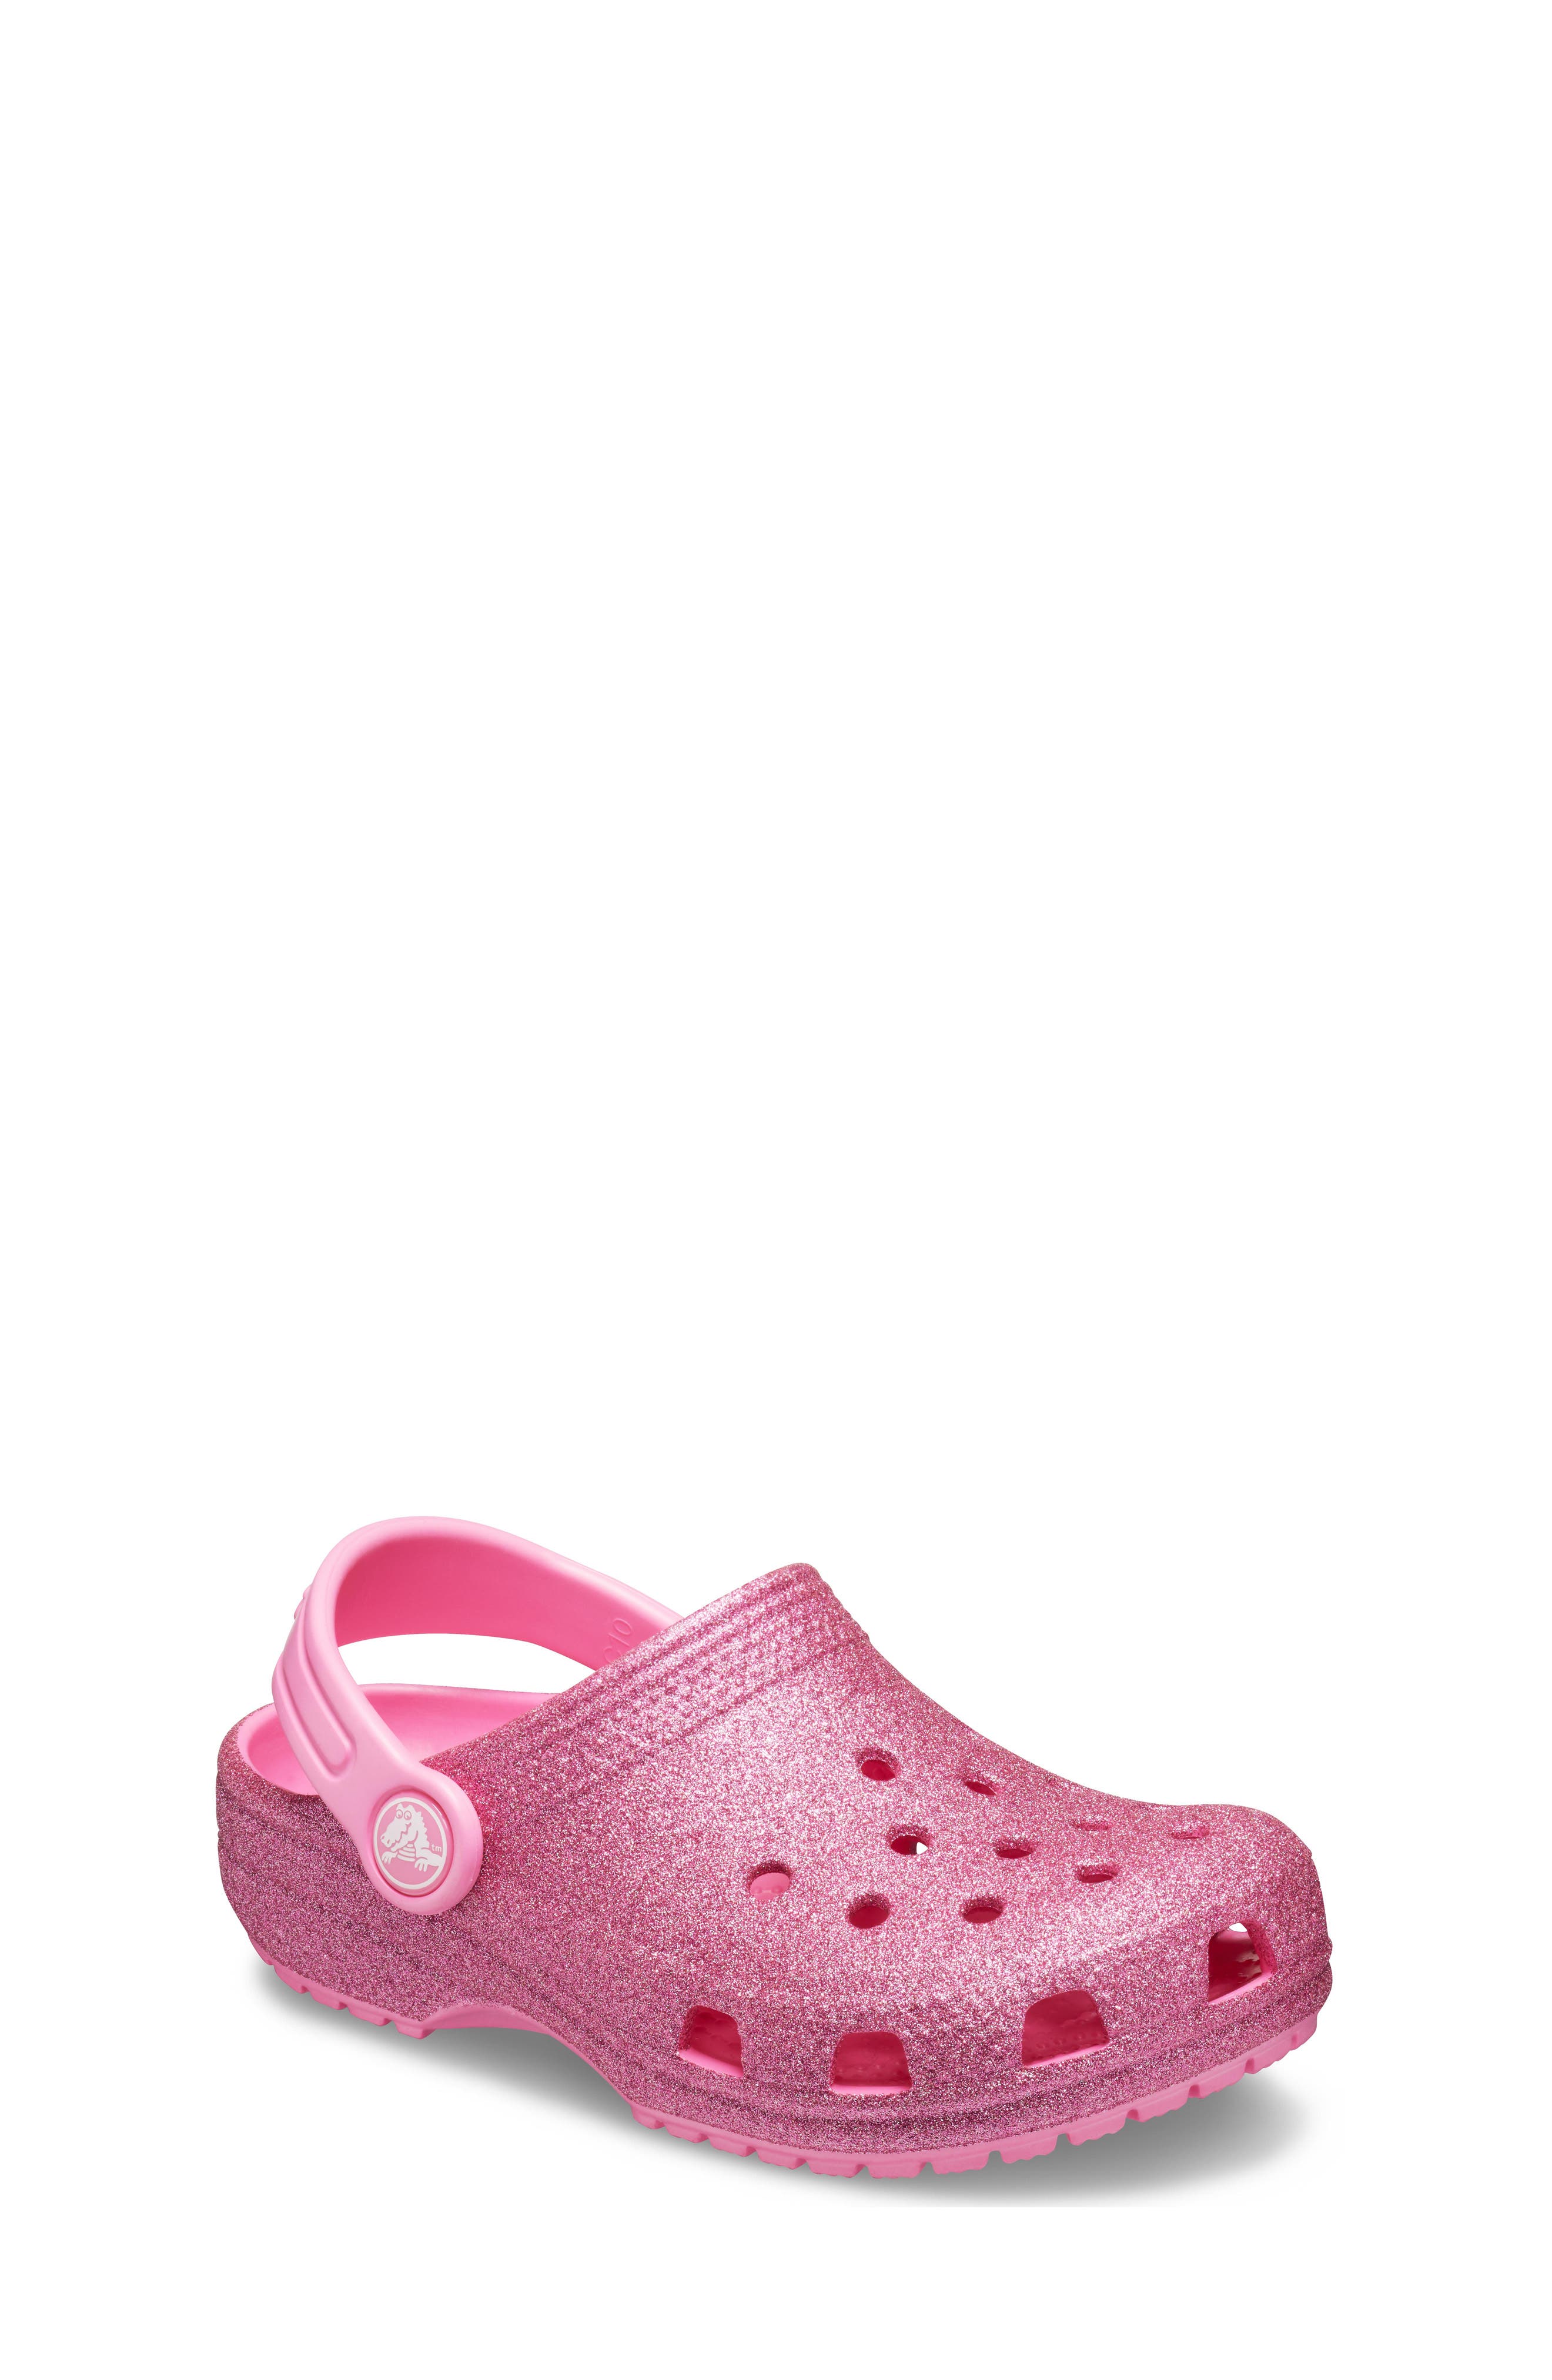 crocs for big girls